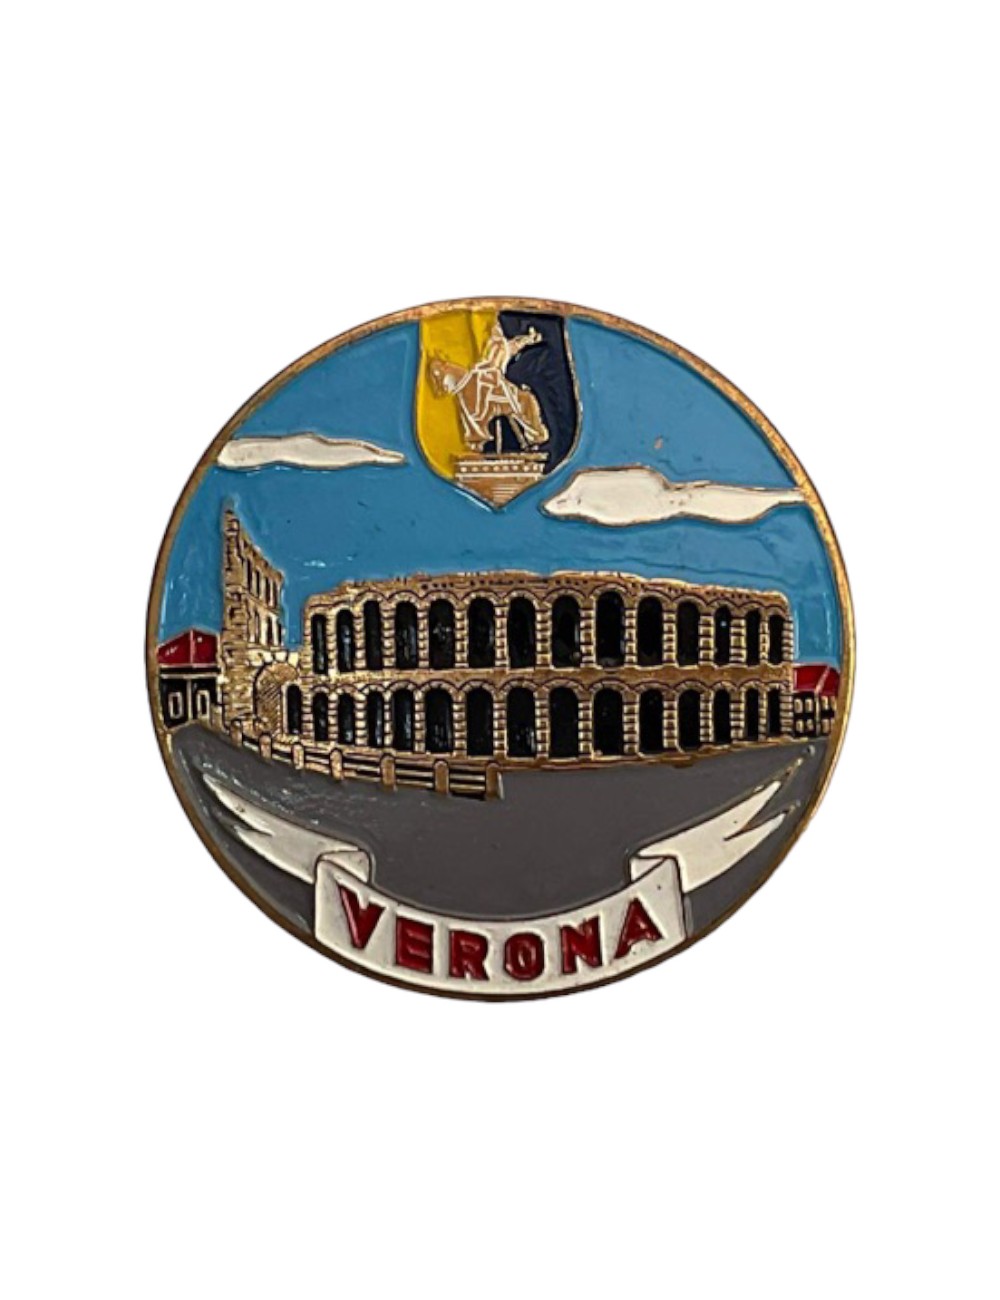 Placca Verona. Dimensioni: 7 cm